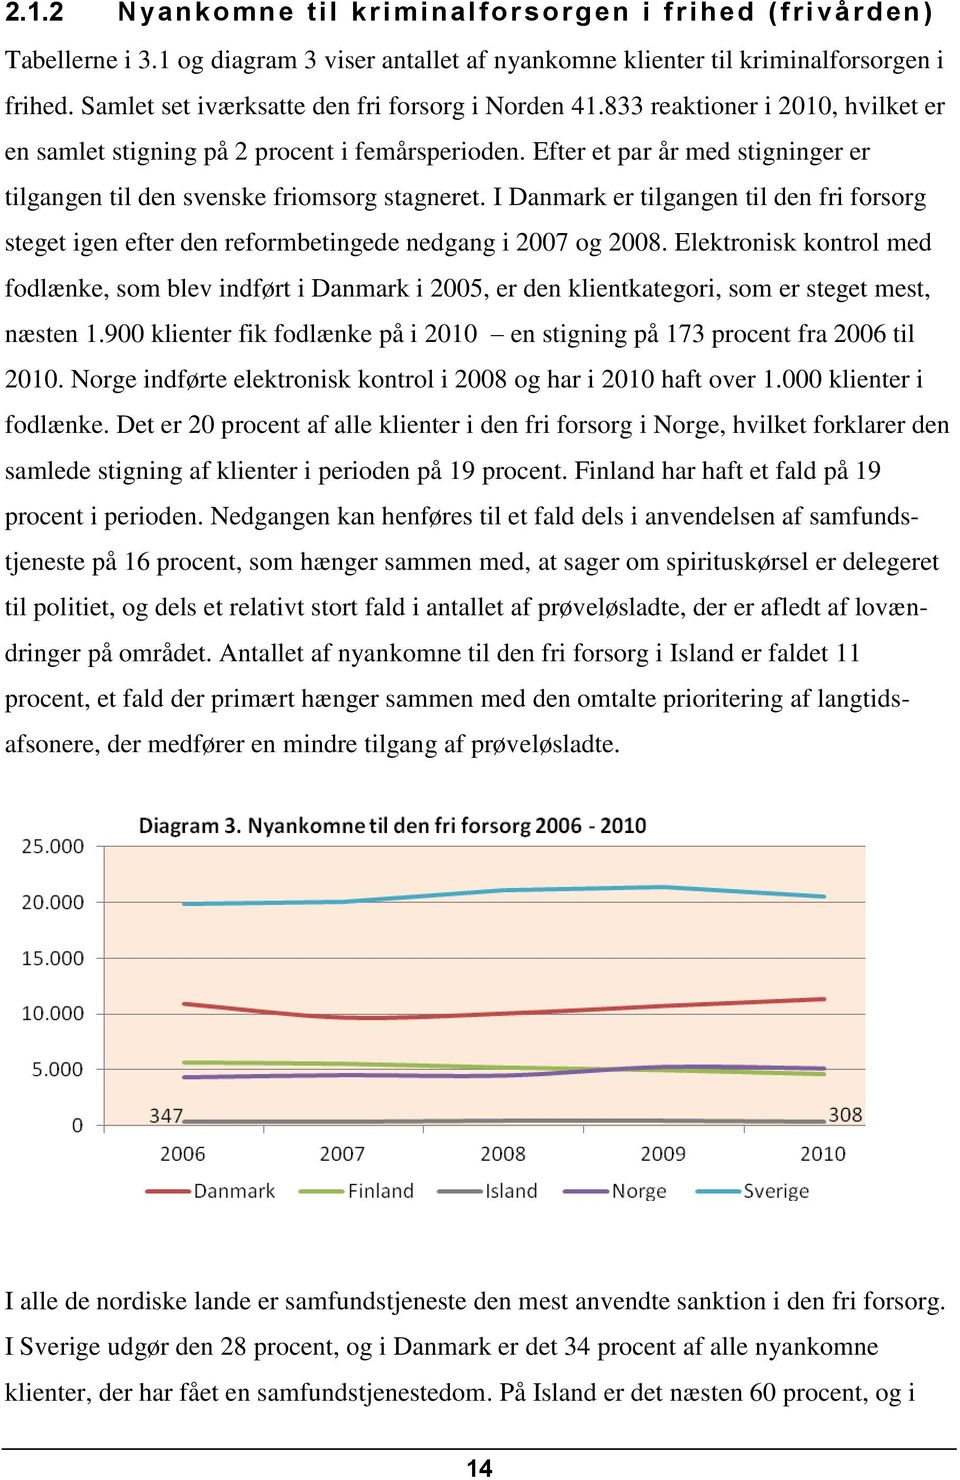 Efter et par år med stigninger er tilgangen til den svenske friomsorg stagneret. I Danmark er tilgangen til den fri forsorg steget igen efter den reformbetingede nedgang i 2007 og 2008.